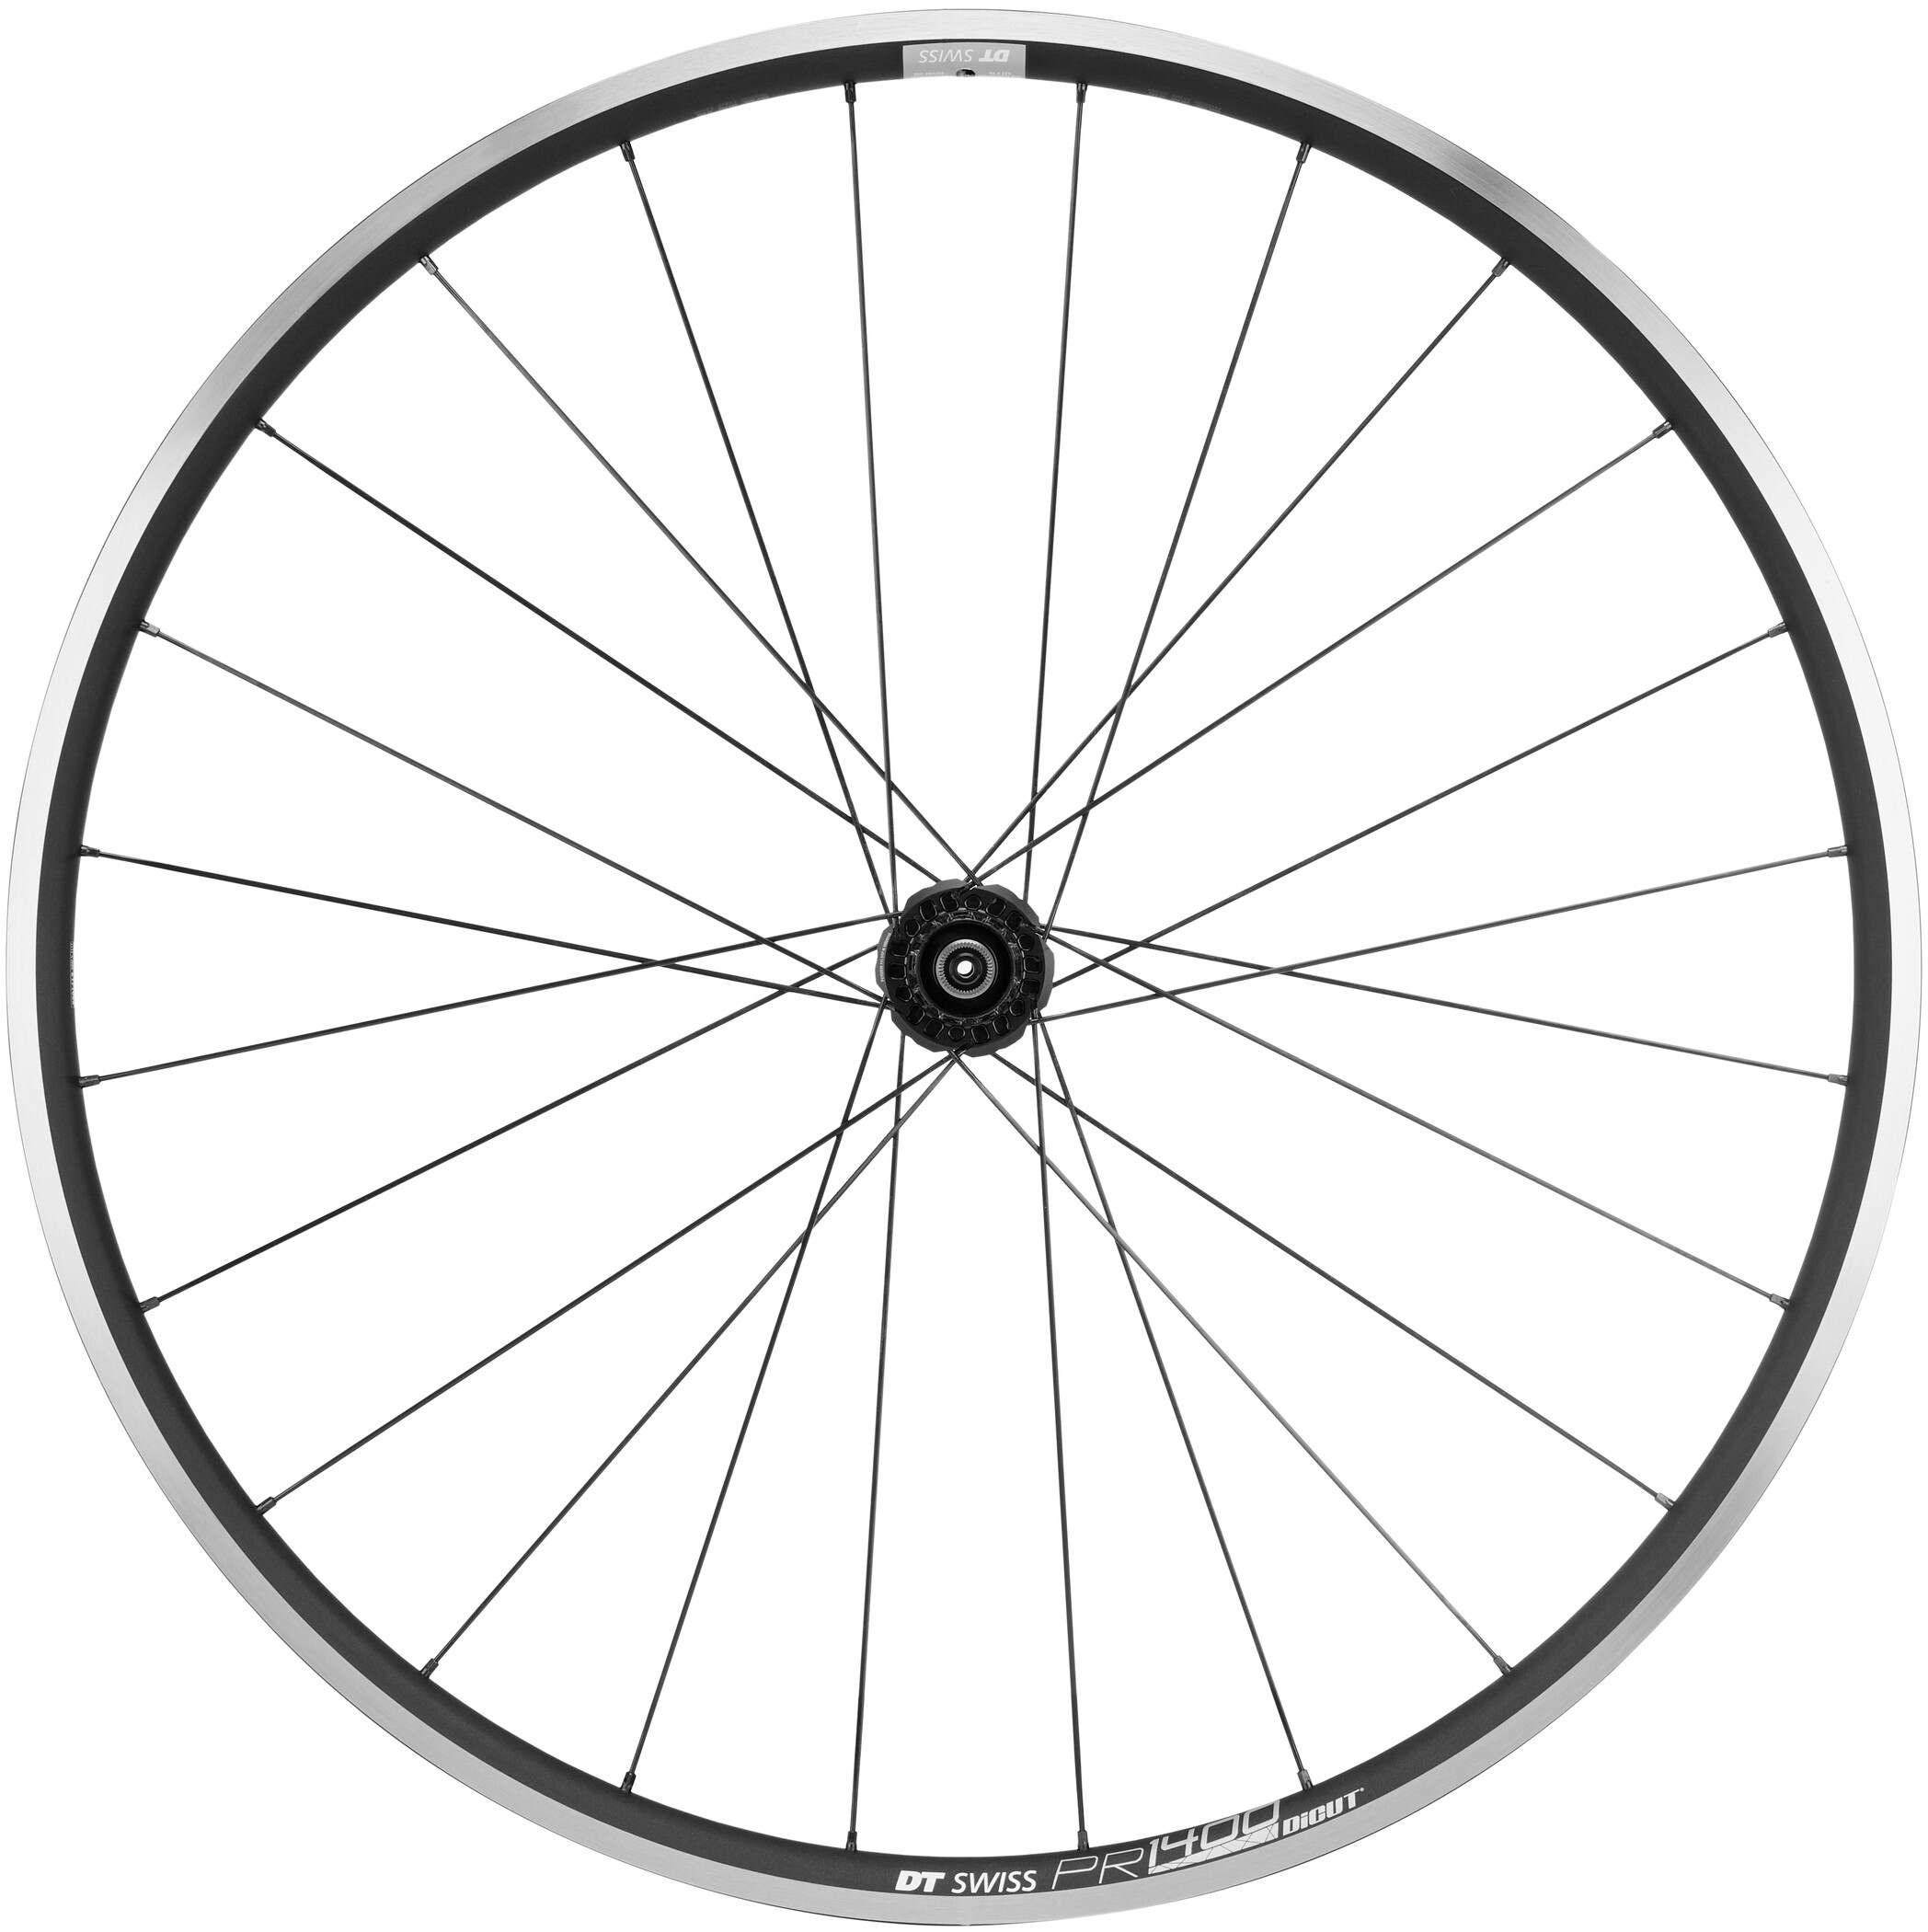 DT Swiss PR 1400 Dicut Road Wheel | cycling wheel